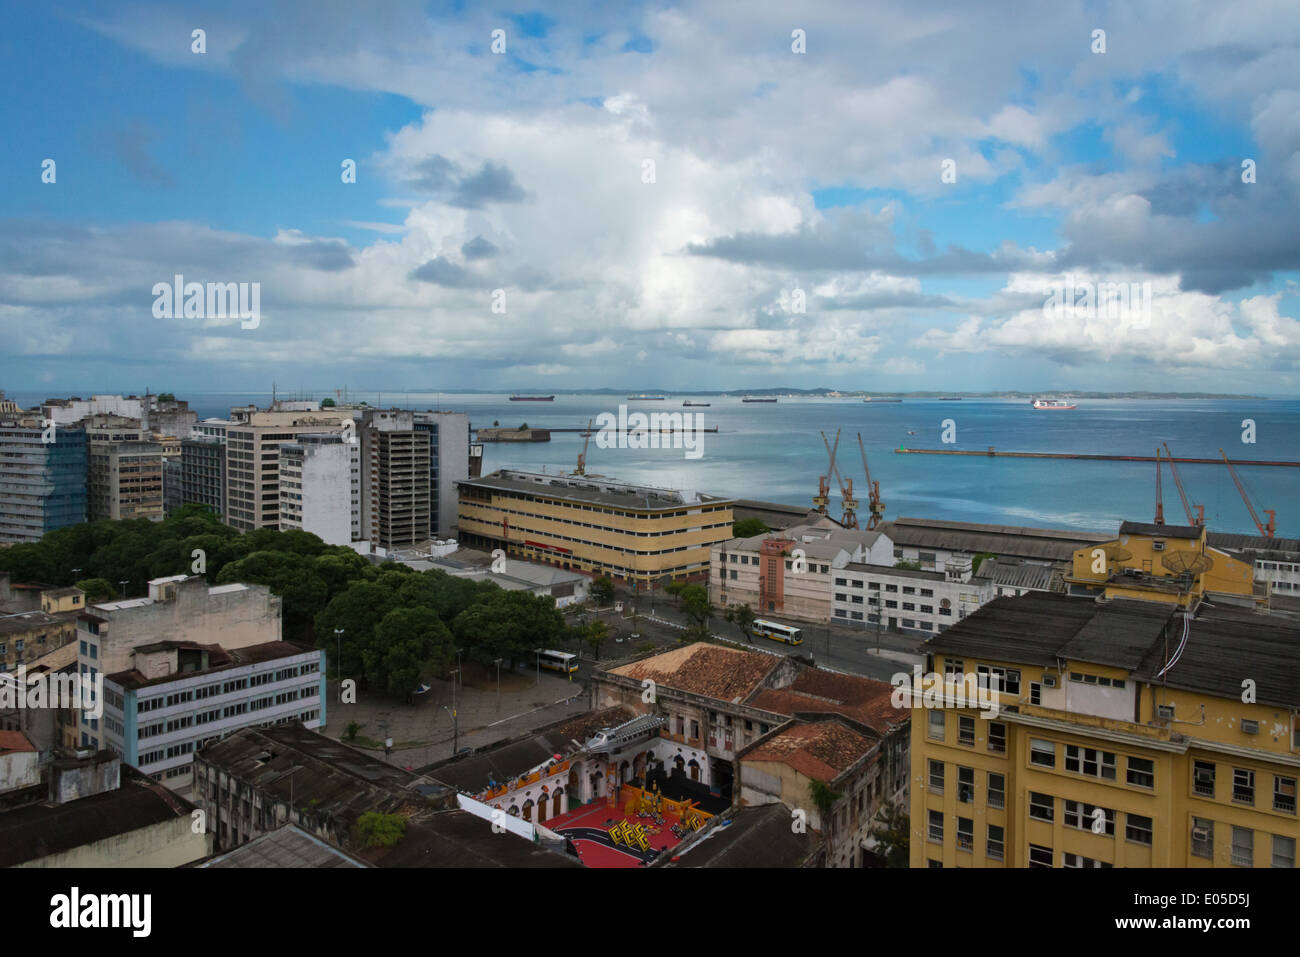 Cityscape along the ocean, Salvador, Bahia State, Brazil Stock Photo